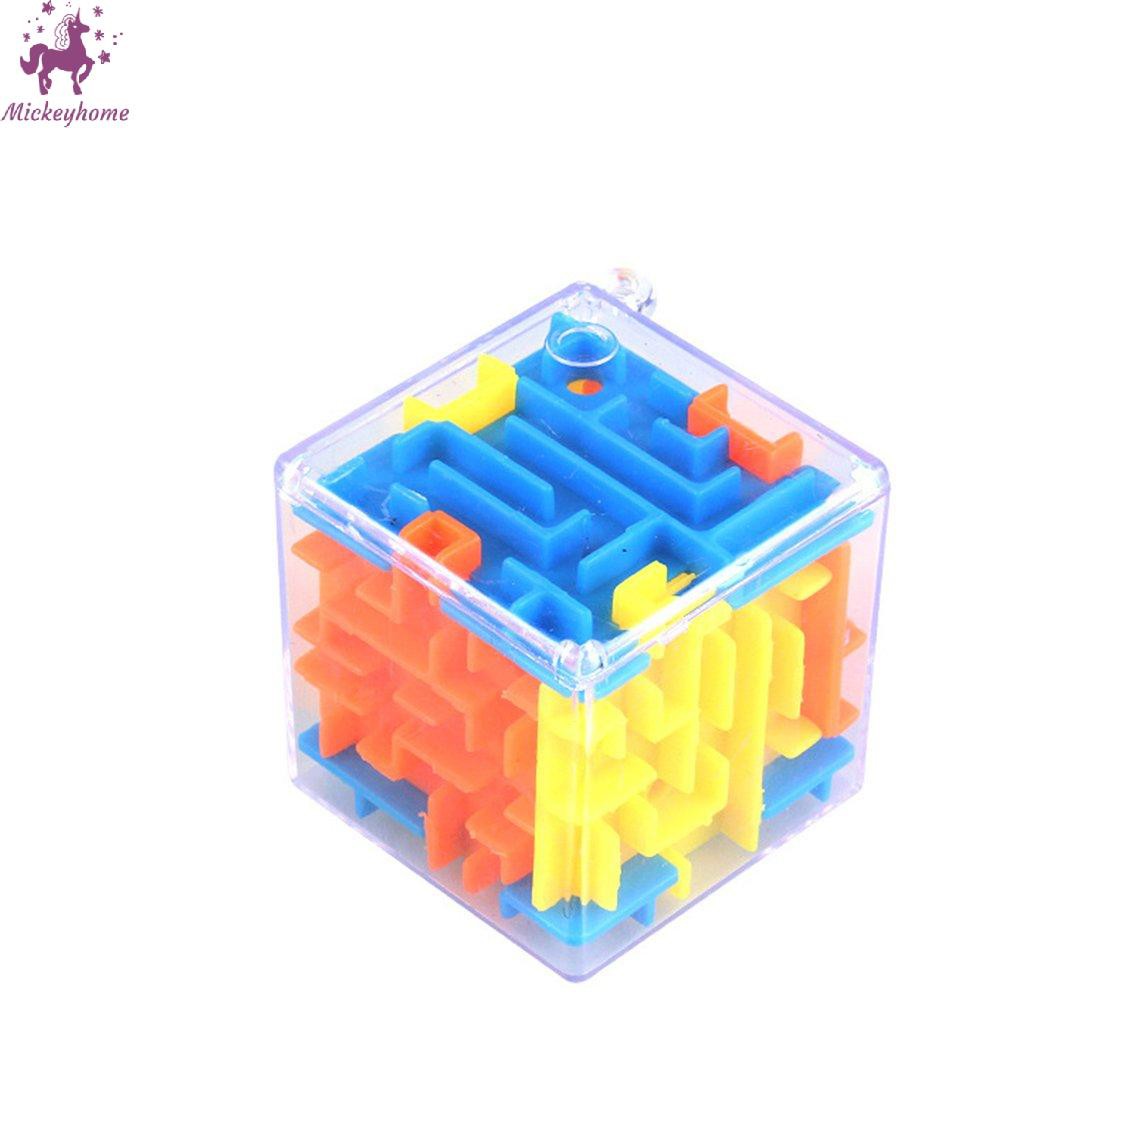 Đồ chơi mê cung hình hộp 3D phát triển trí tuệ dành cho trẻ em